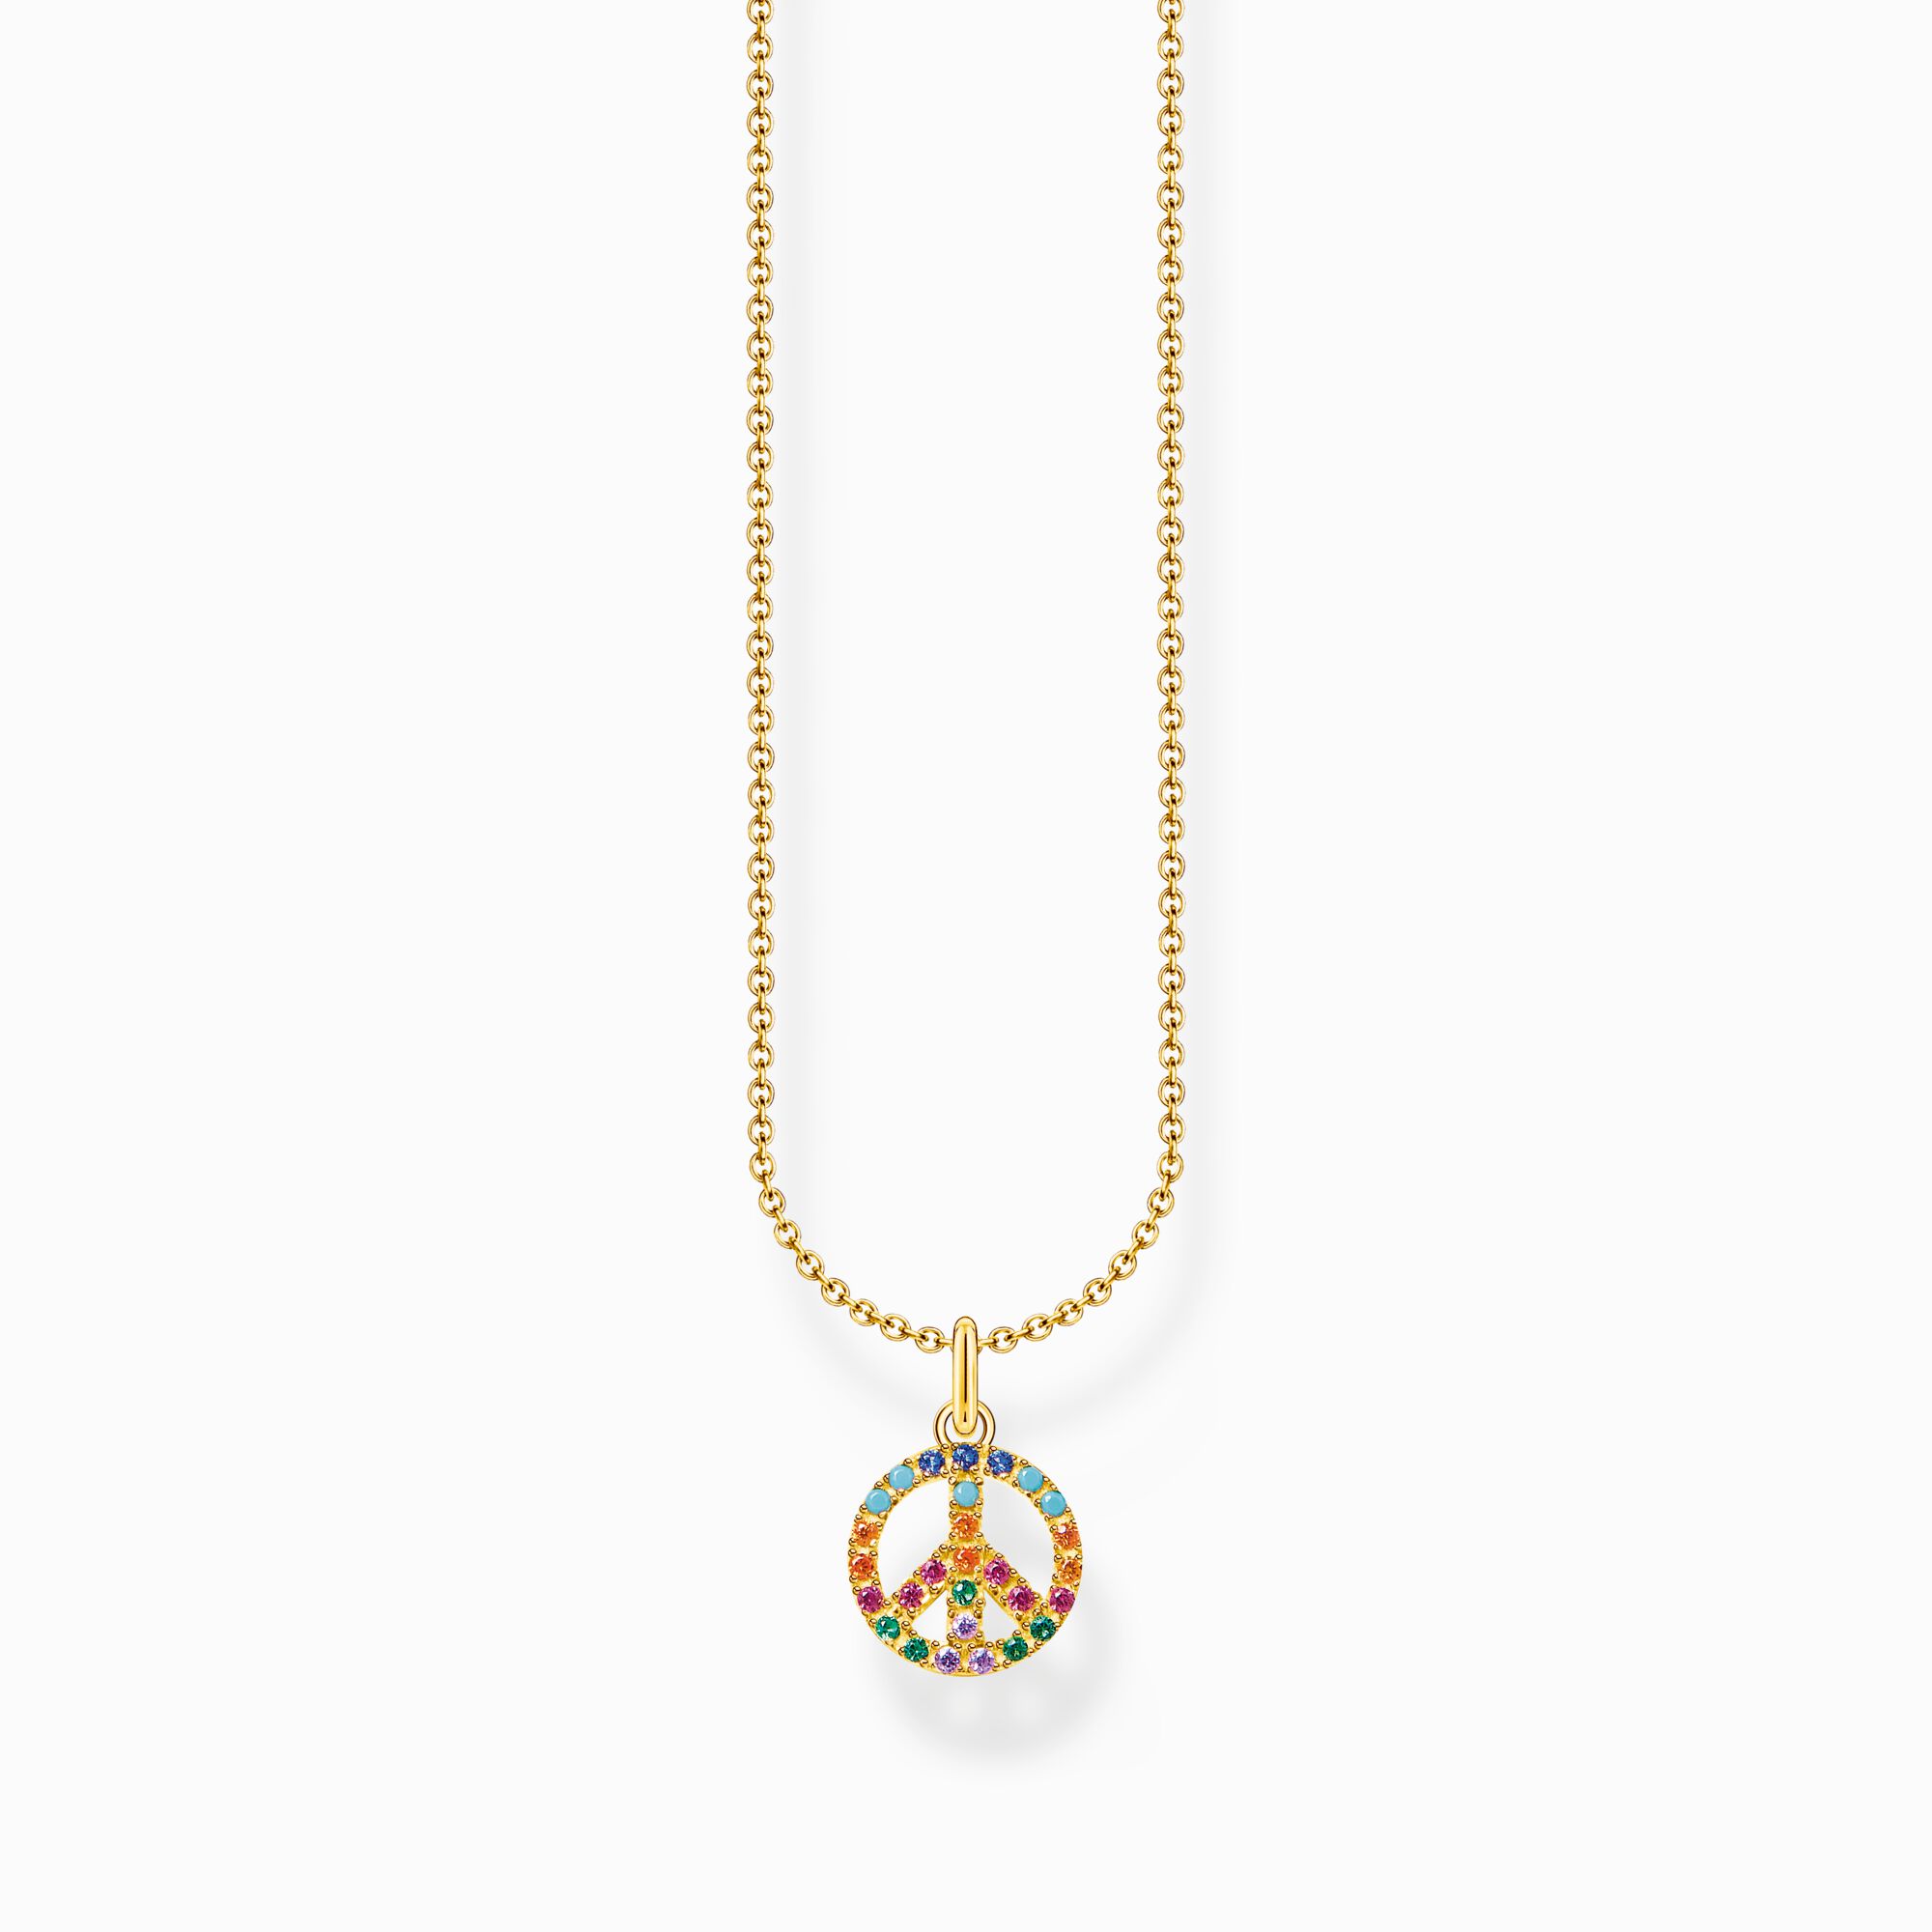 Cadena peace con piedras de colores oro de la colección Charming Collection en la tienda online de THOMAS SABO